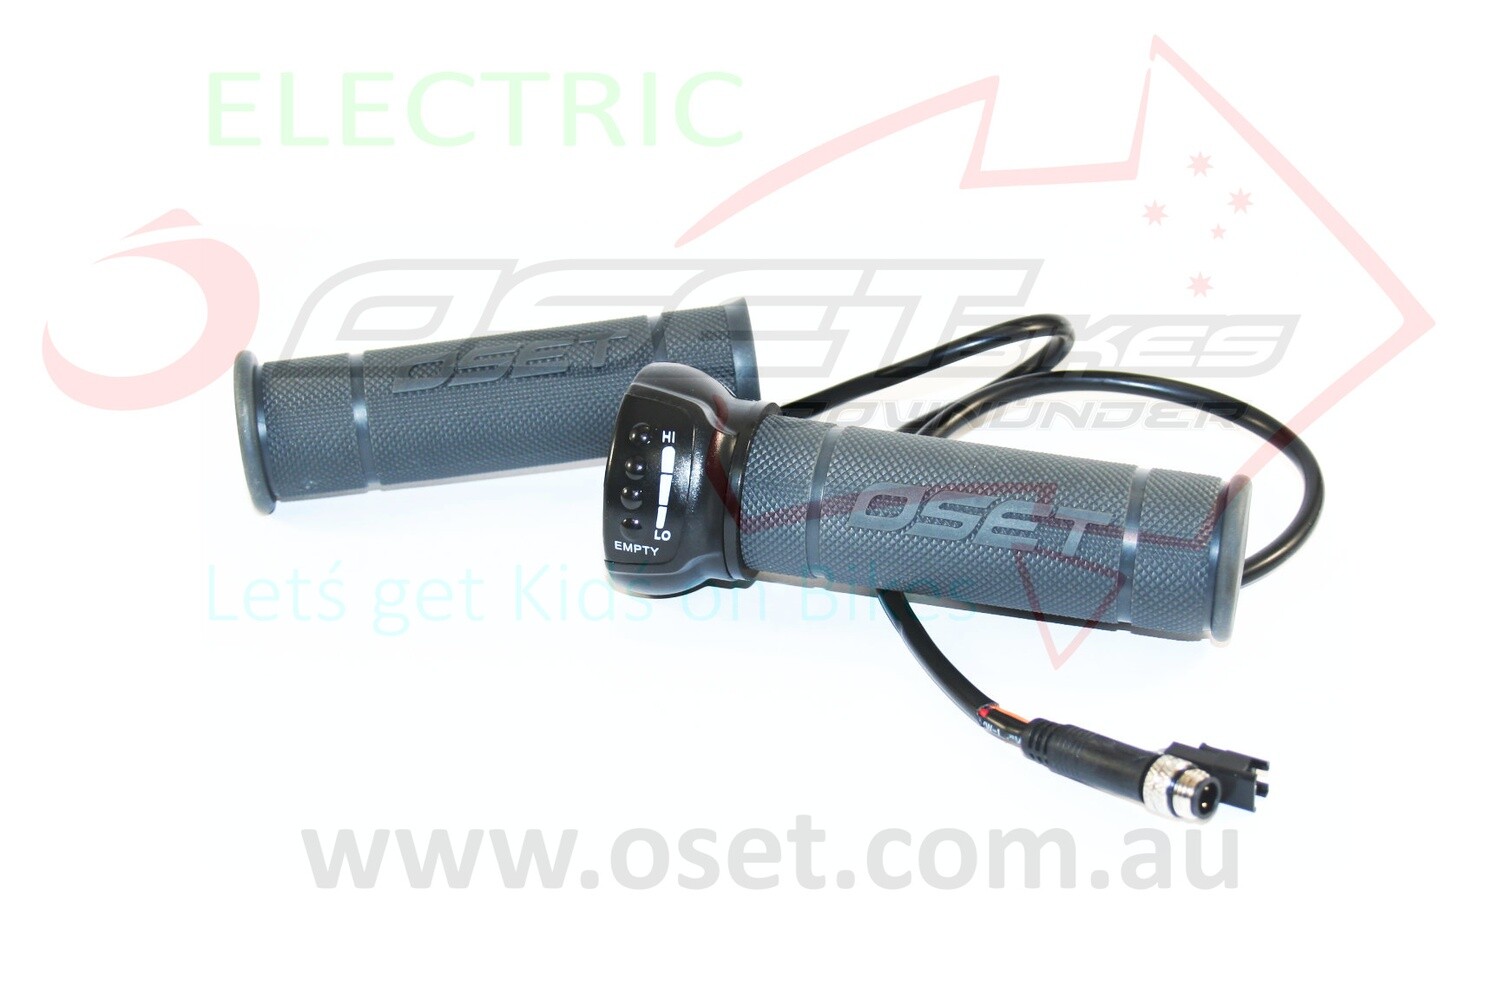 Throttle OSET12E/R - 24v, Thin Short Grey Grips